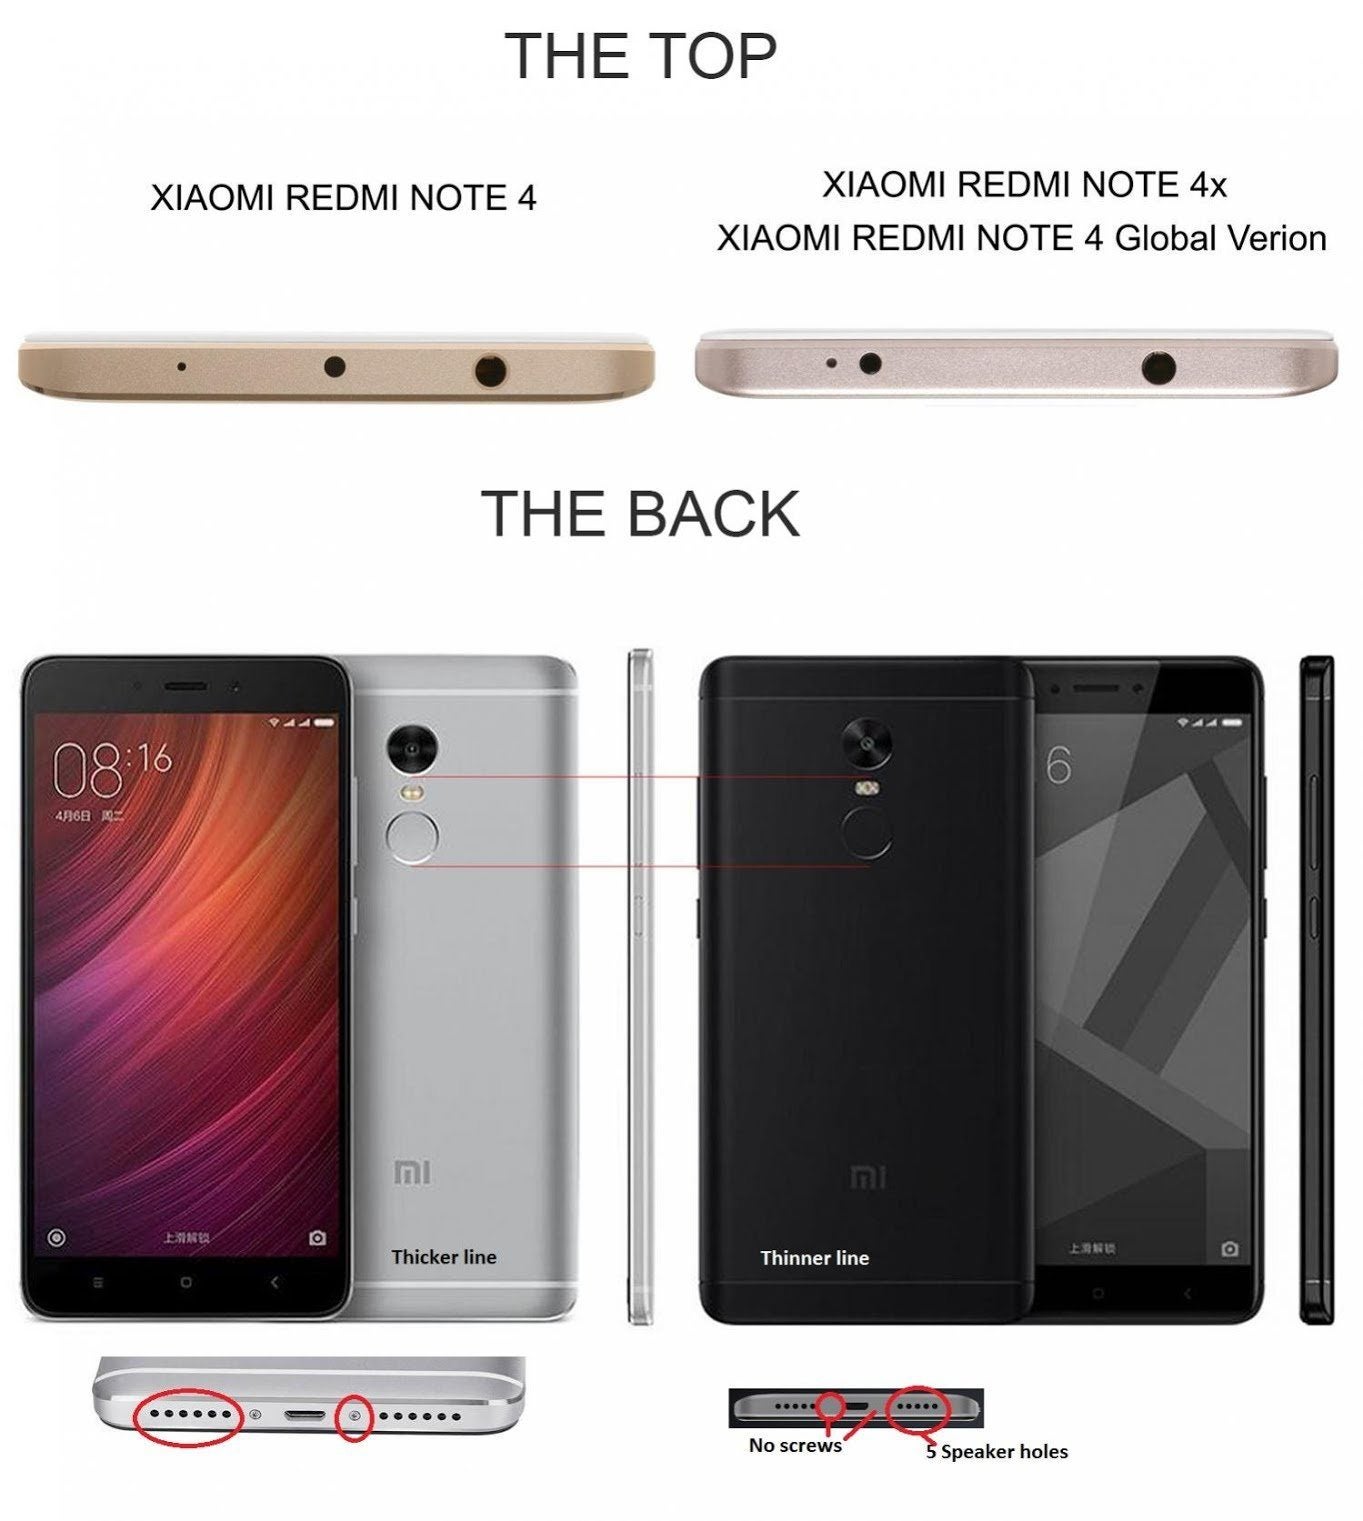 Xiaomi Redmi Note 4 Global Version